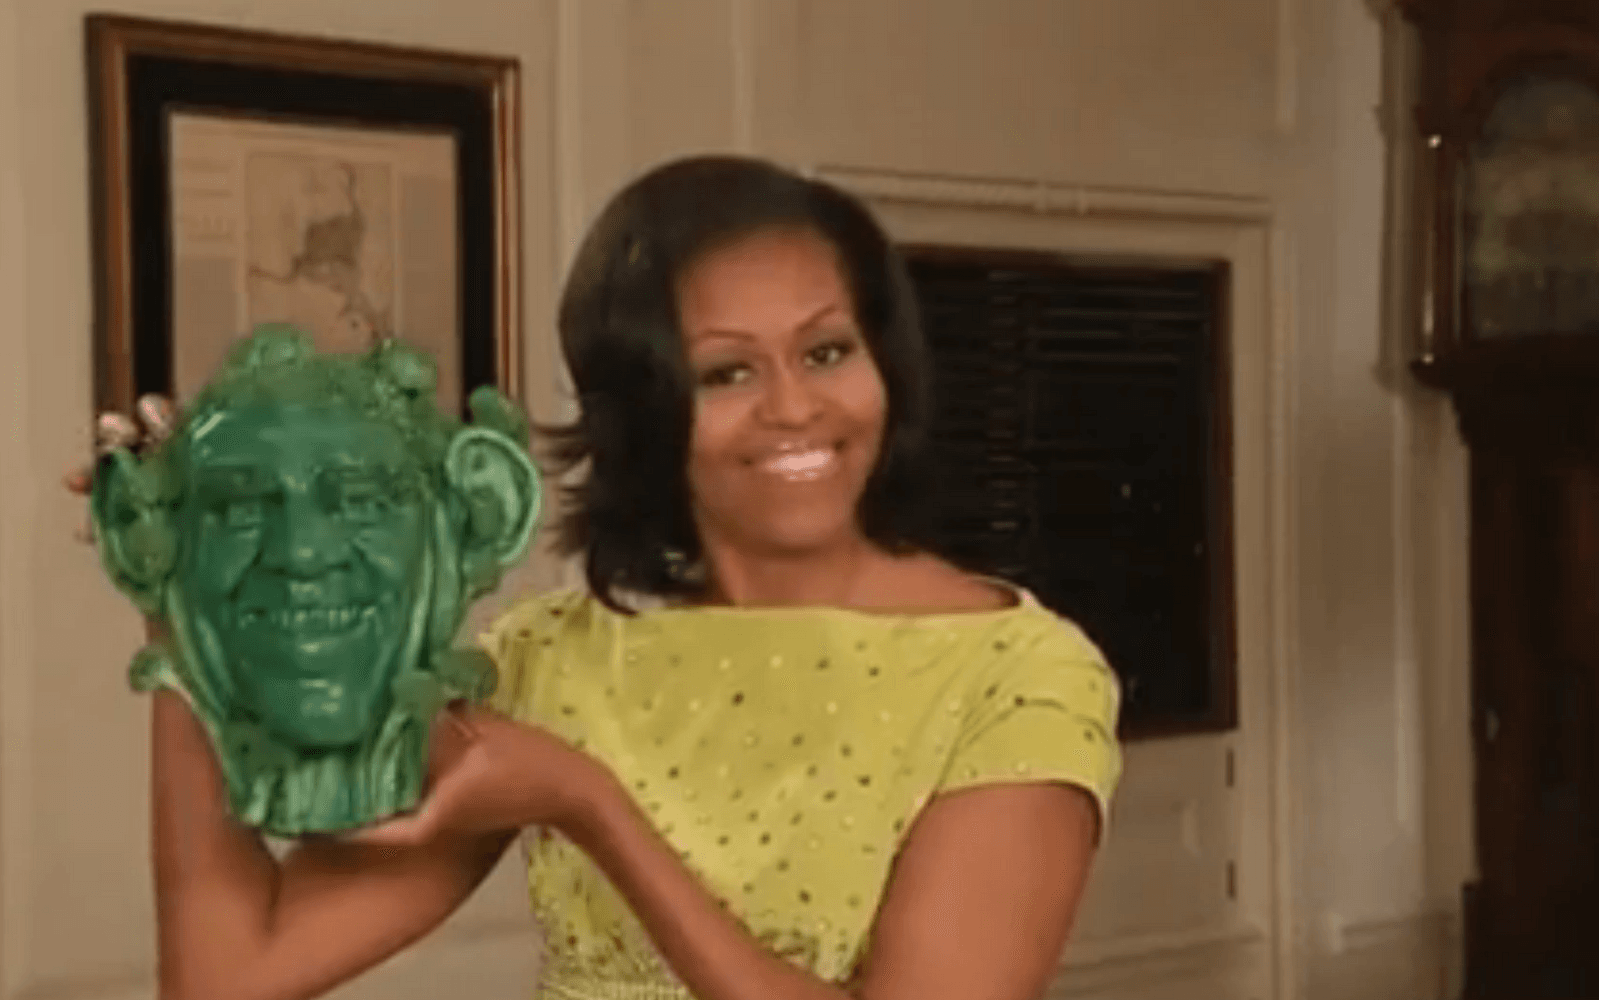 Och vem kan glömma när Michelle Obama presenterade David Lettermans topp 10-lista "Tio roliga faktan om trädgårdsarbete" och visade upp en stor Barackoli. Den verkliga orsaken till att hon medverkade var naturligtvis för att marknadsföra boken "American Grown" som är en del i hennes försök att få amerikaner att äta nyttigare.